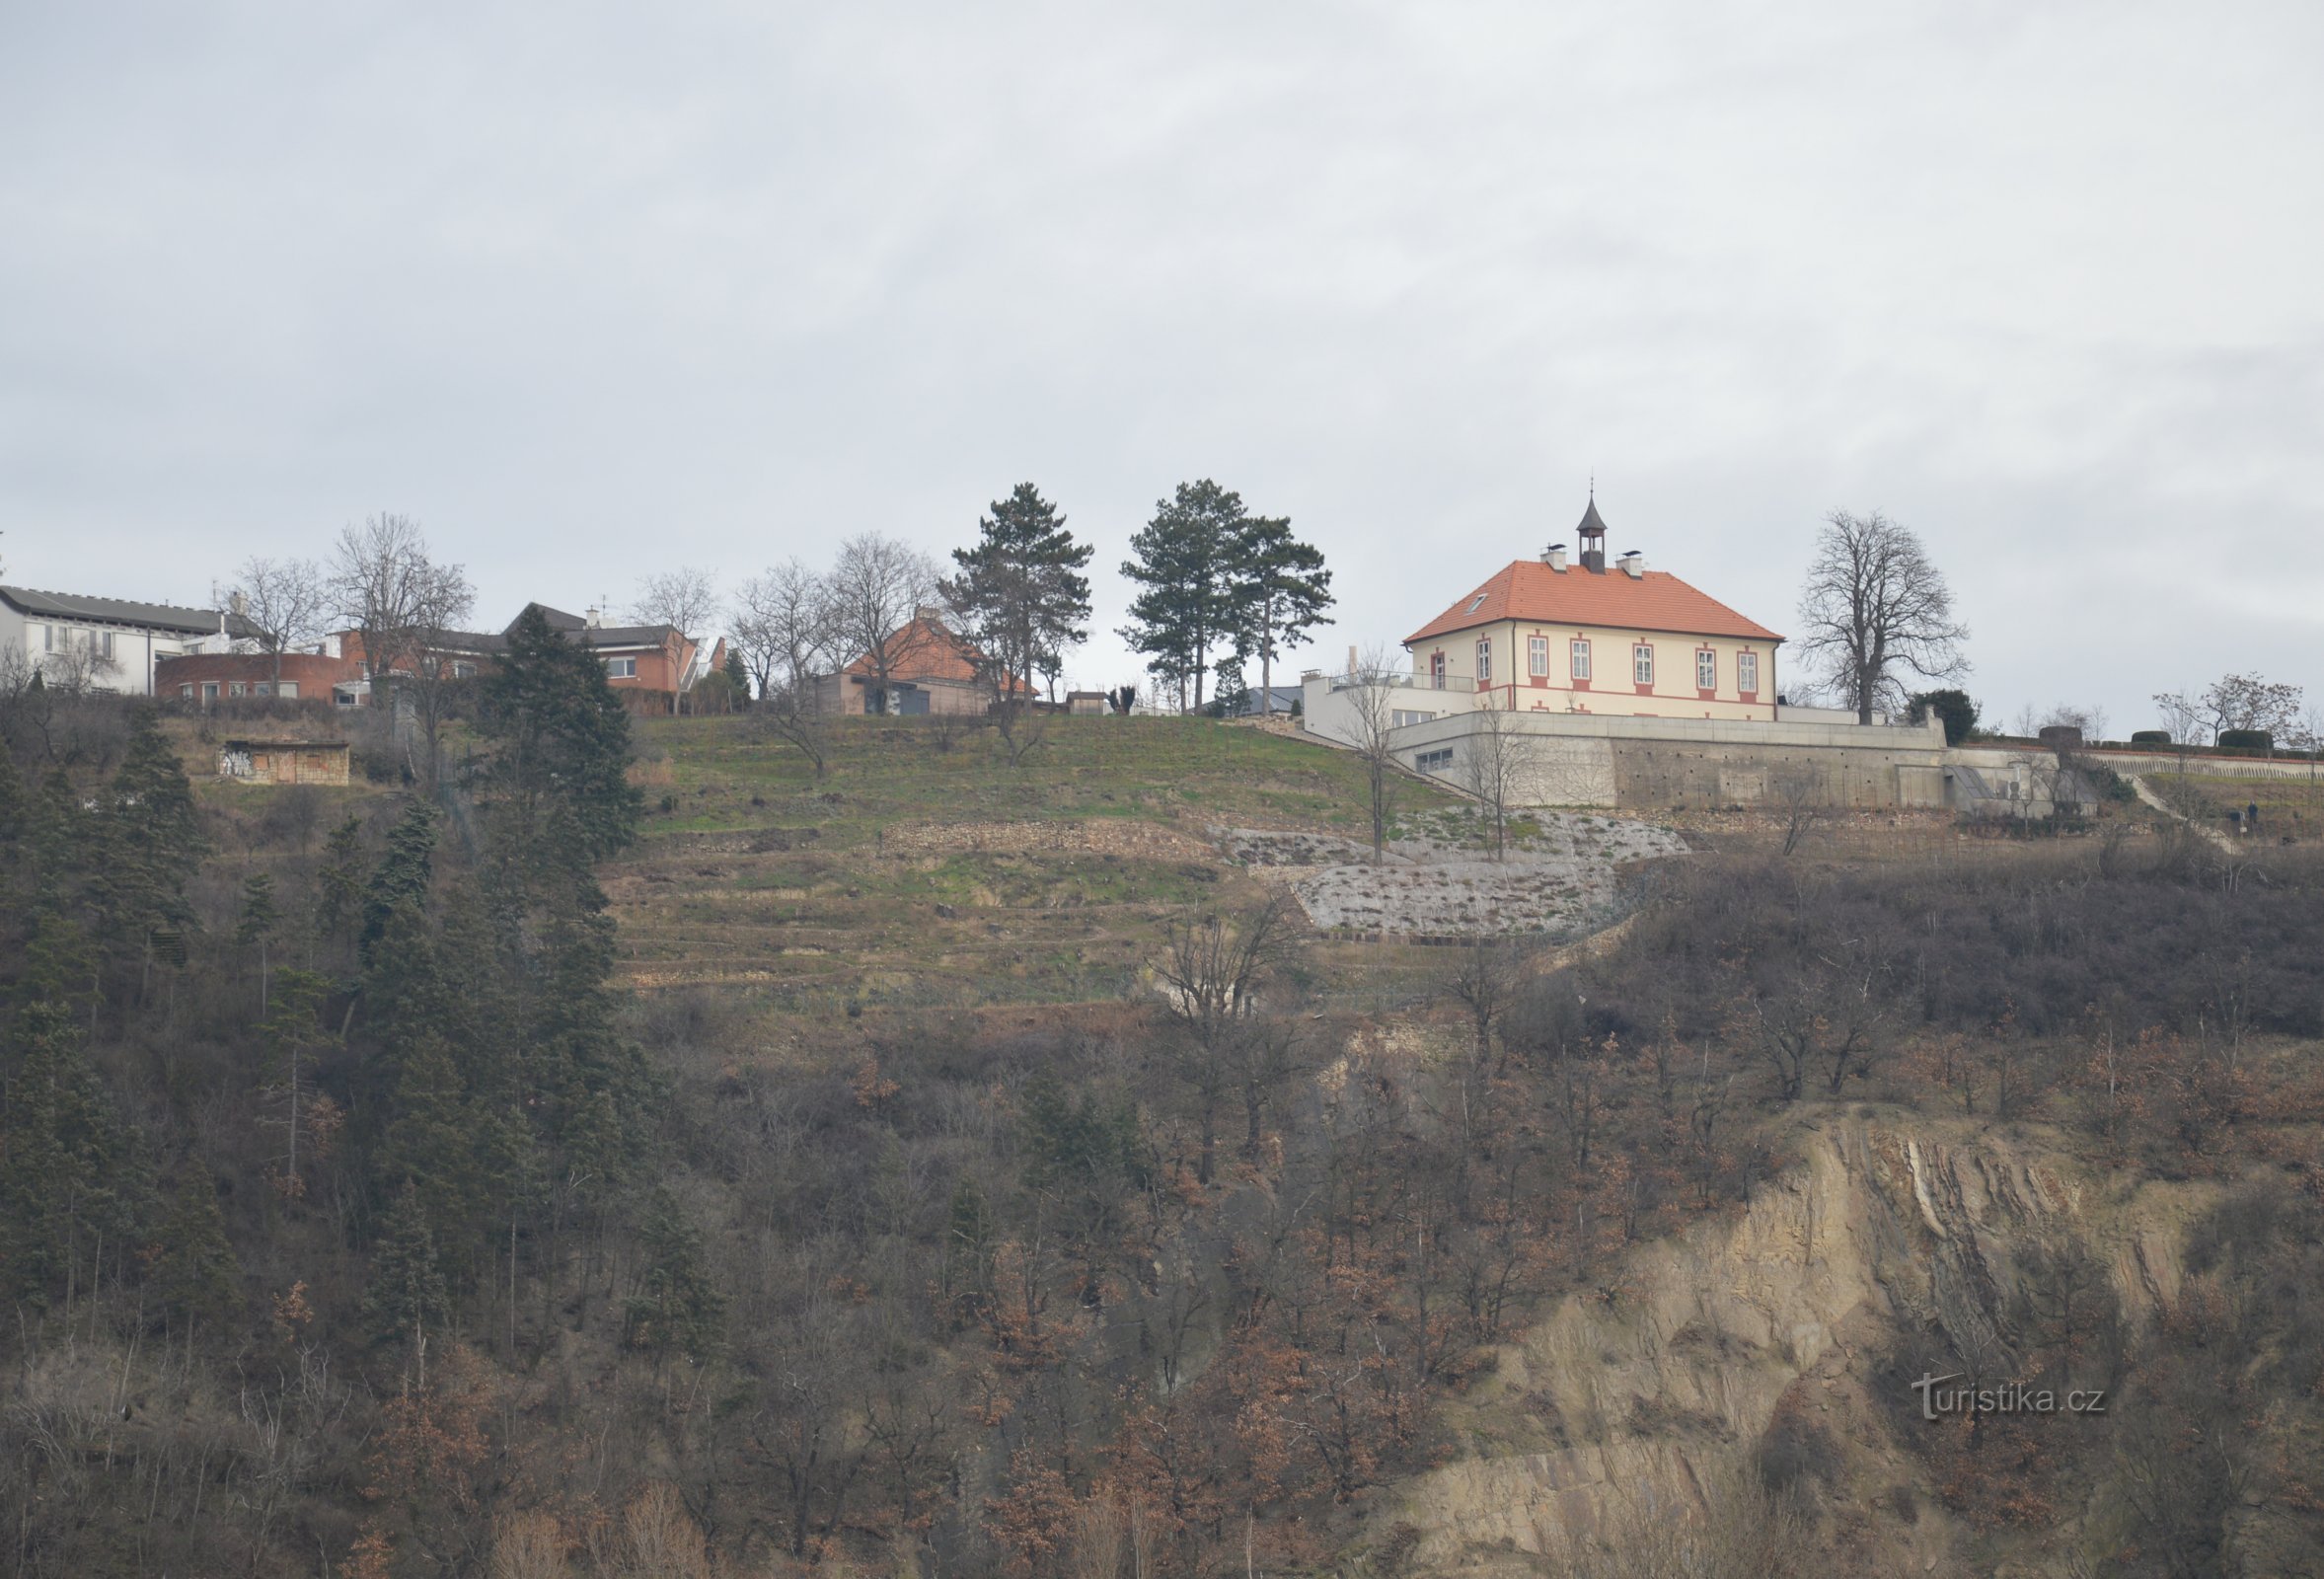 Château de Jablůňka avec jardin